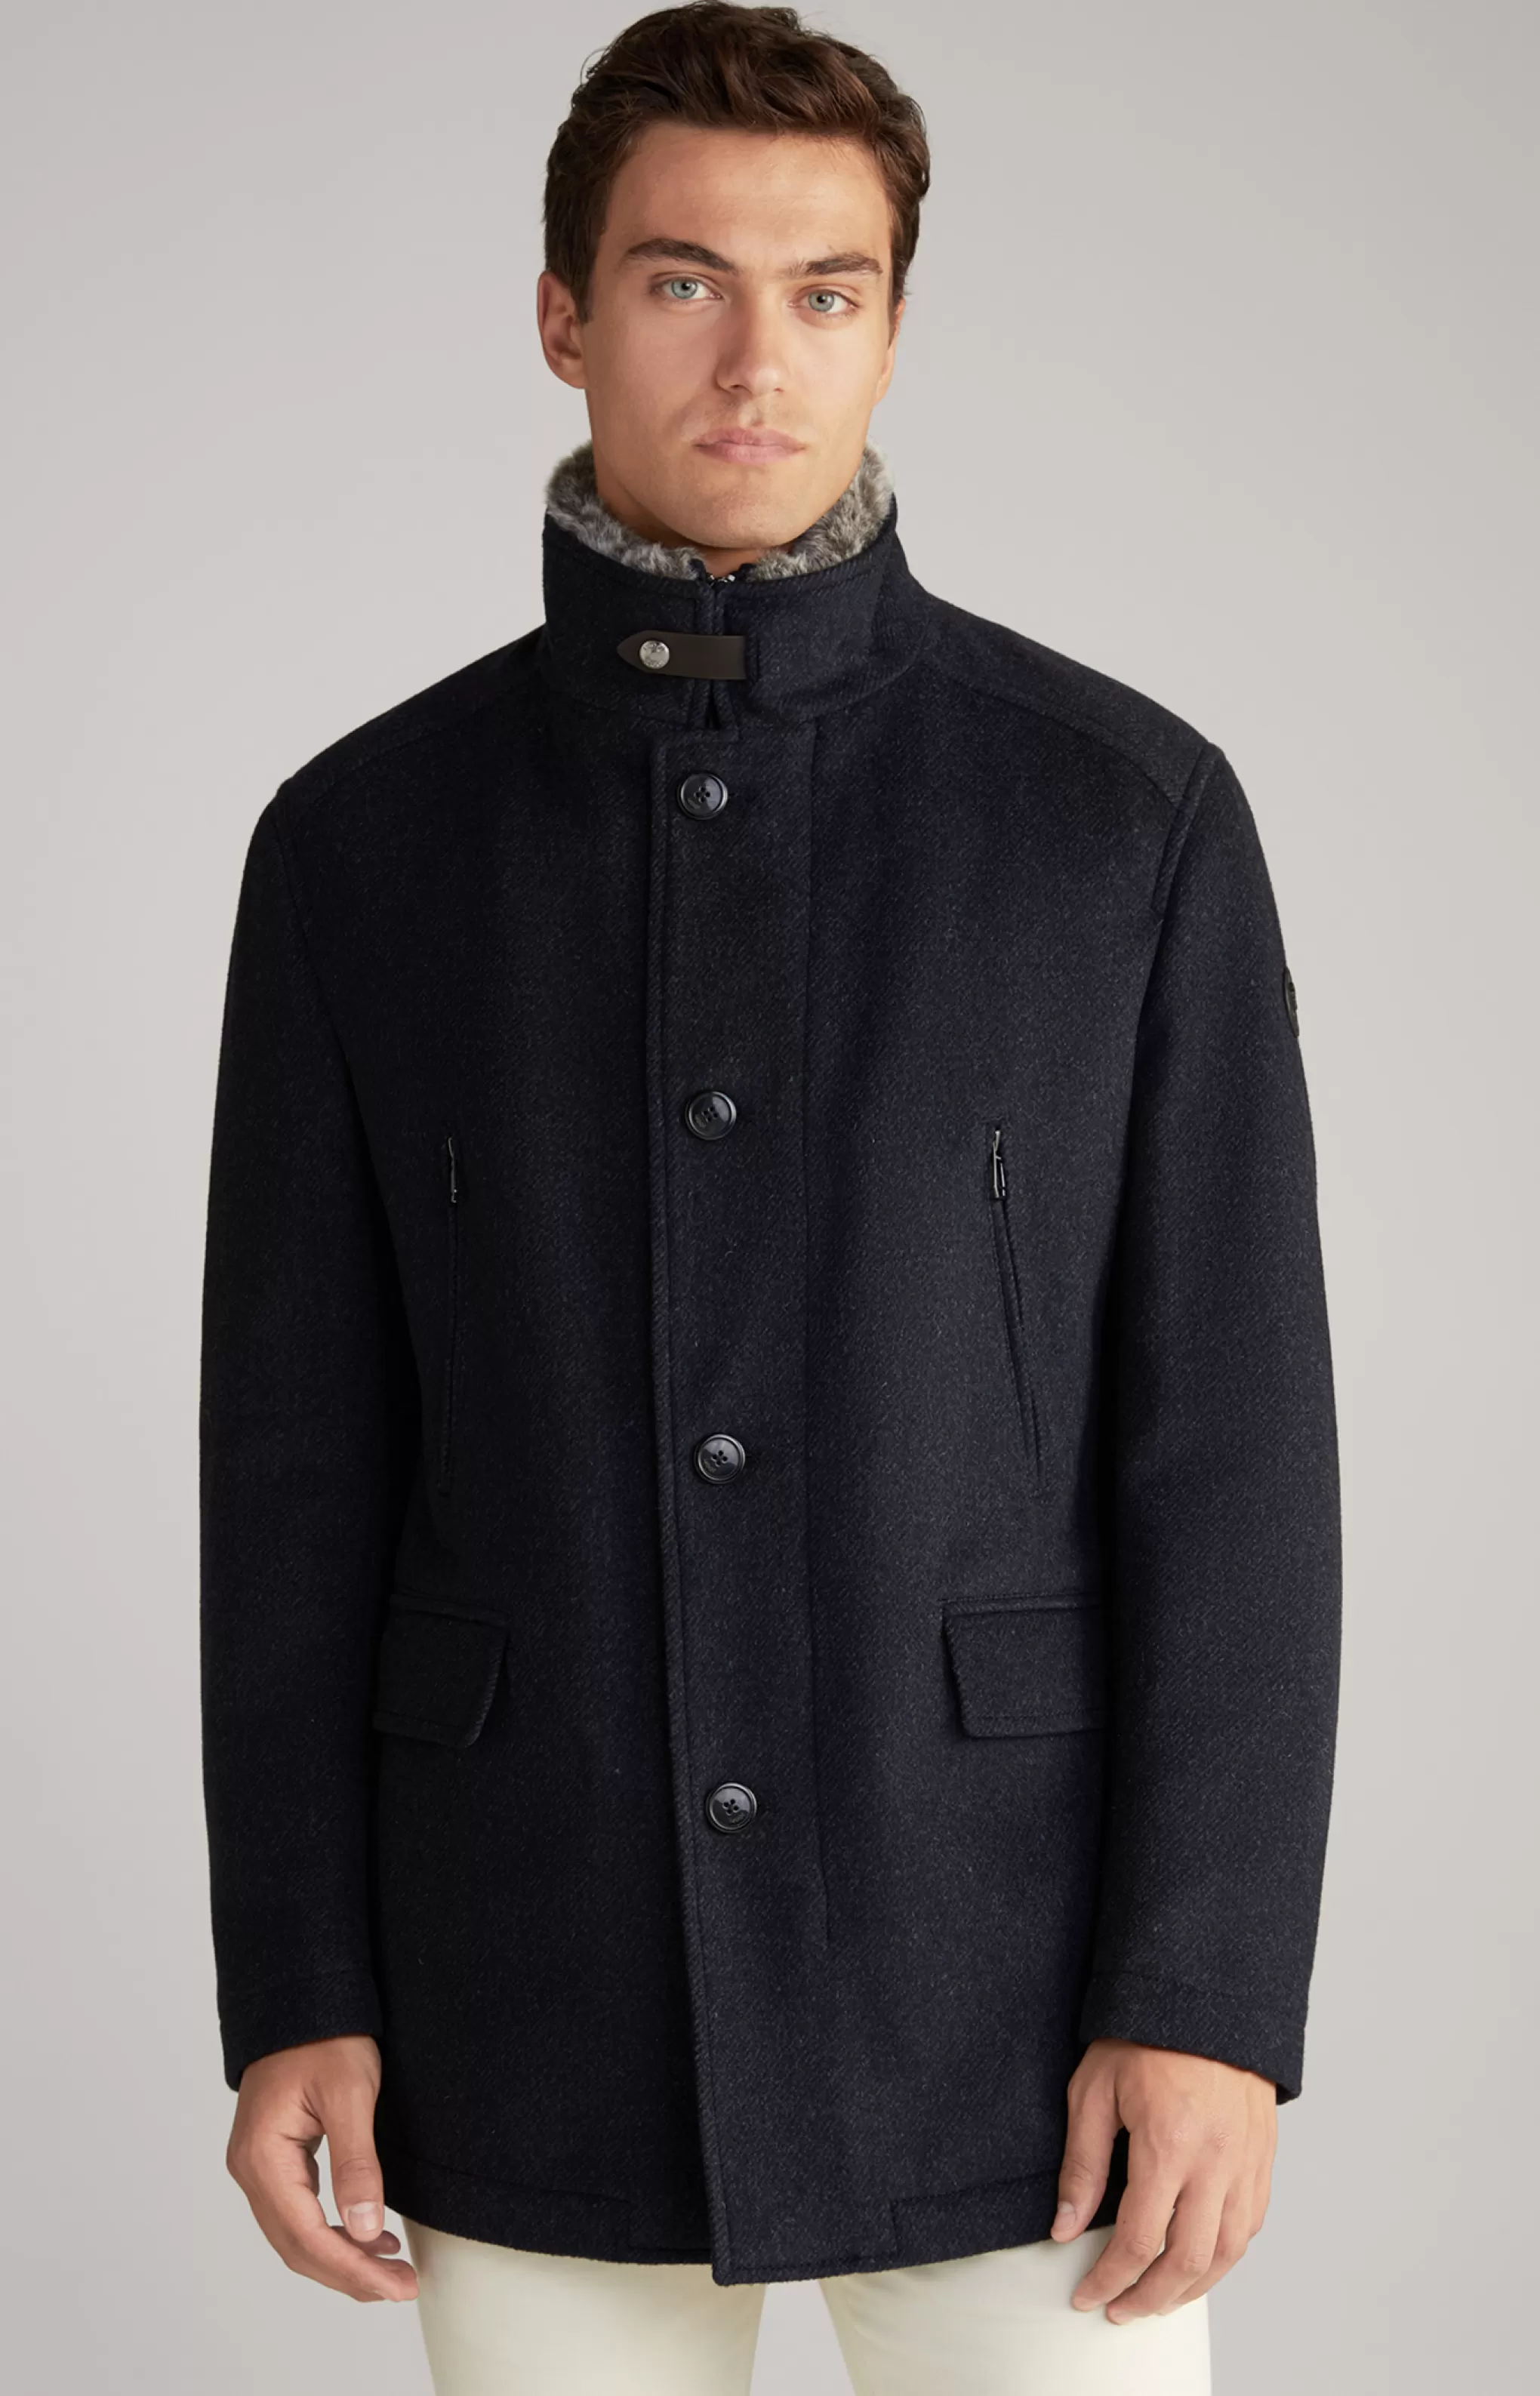 Coats | Jackets | Clothing*JOOP Coats | Jackets | Clothing Gary Coat in Mottled